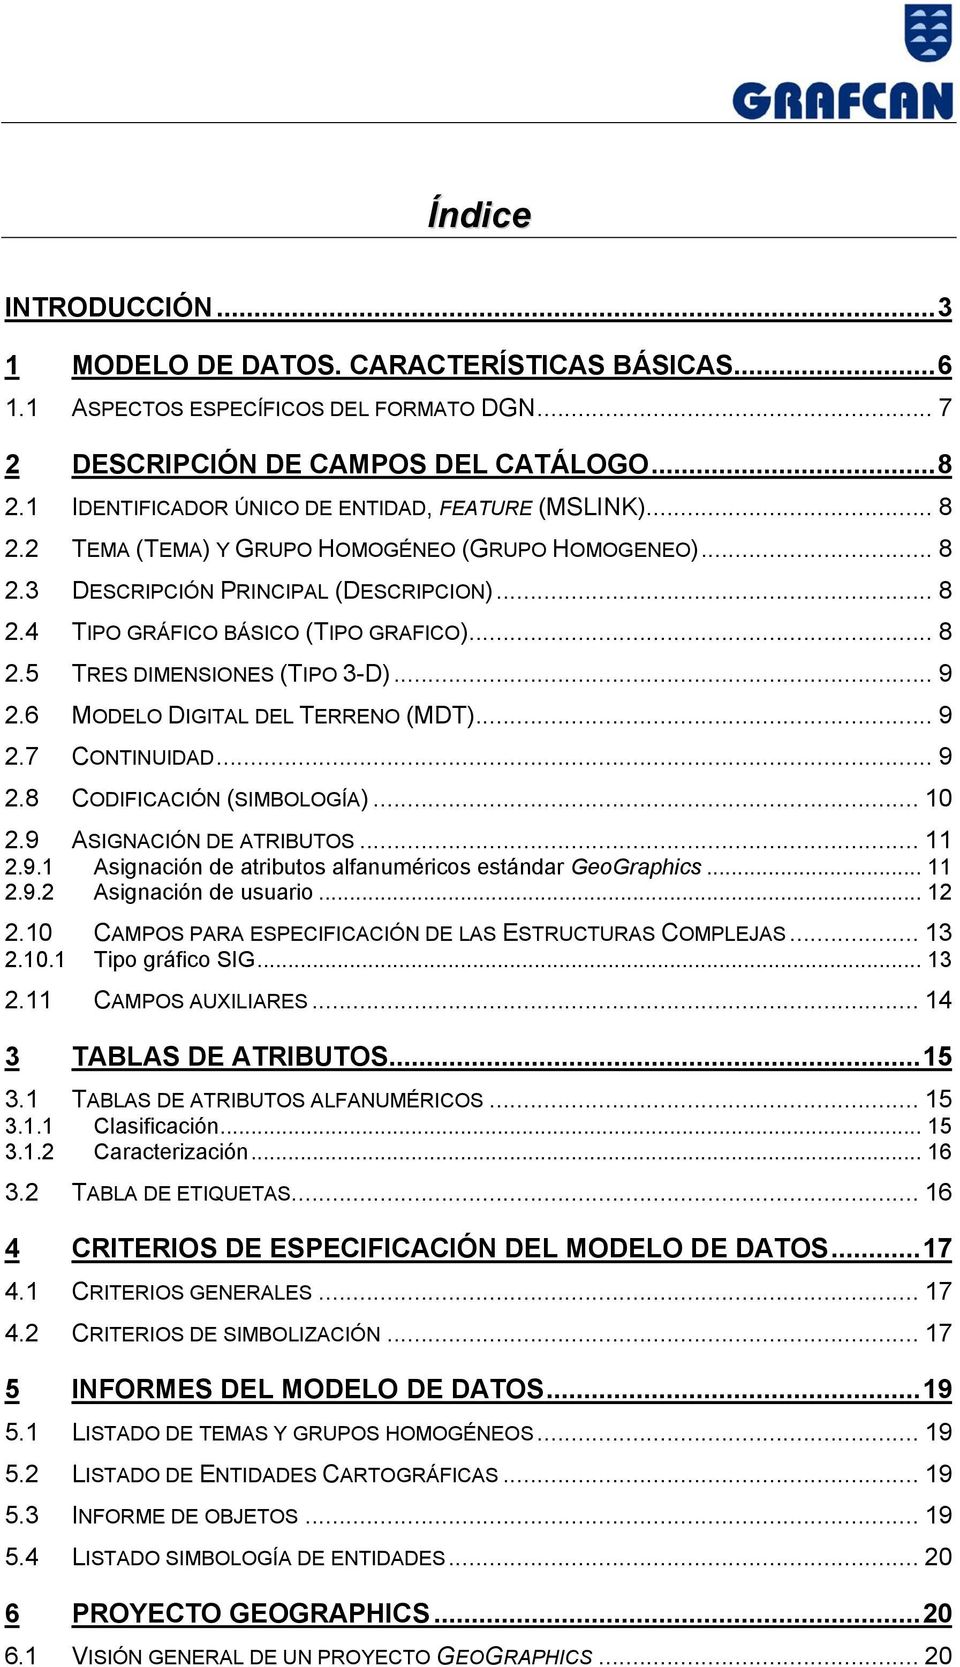 .. 8 2.5 TRES DIMENSIONES (TIPO 3-D)... 9 2.6 MODELO DIGITAL DEL TERRENO (MDT)... 9 2.7 CONTINUIDAD... 9 2.8 CODIFICACIÓN (SIMBOLOGÍA)... 10 2.9 ASIGNACIÓN DE ATRIBUTOS... 11 2.9.1 Asignación de atributos alfanuméricos estándar GeoGraphics.